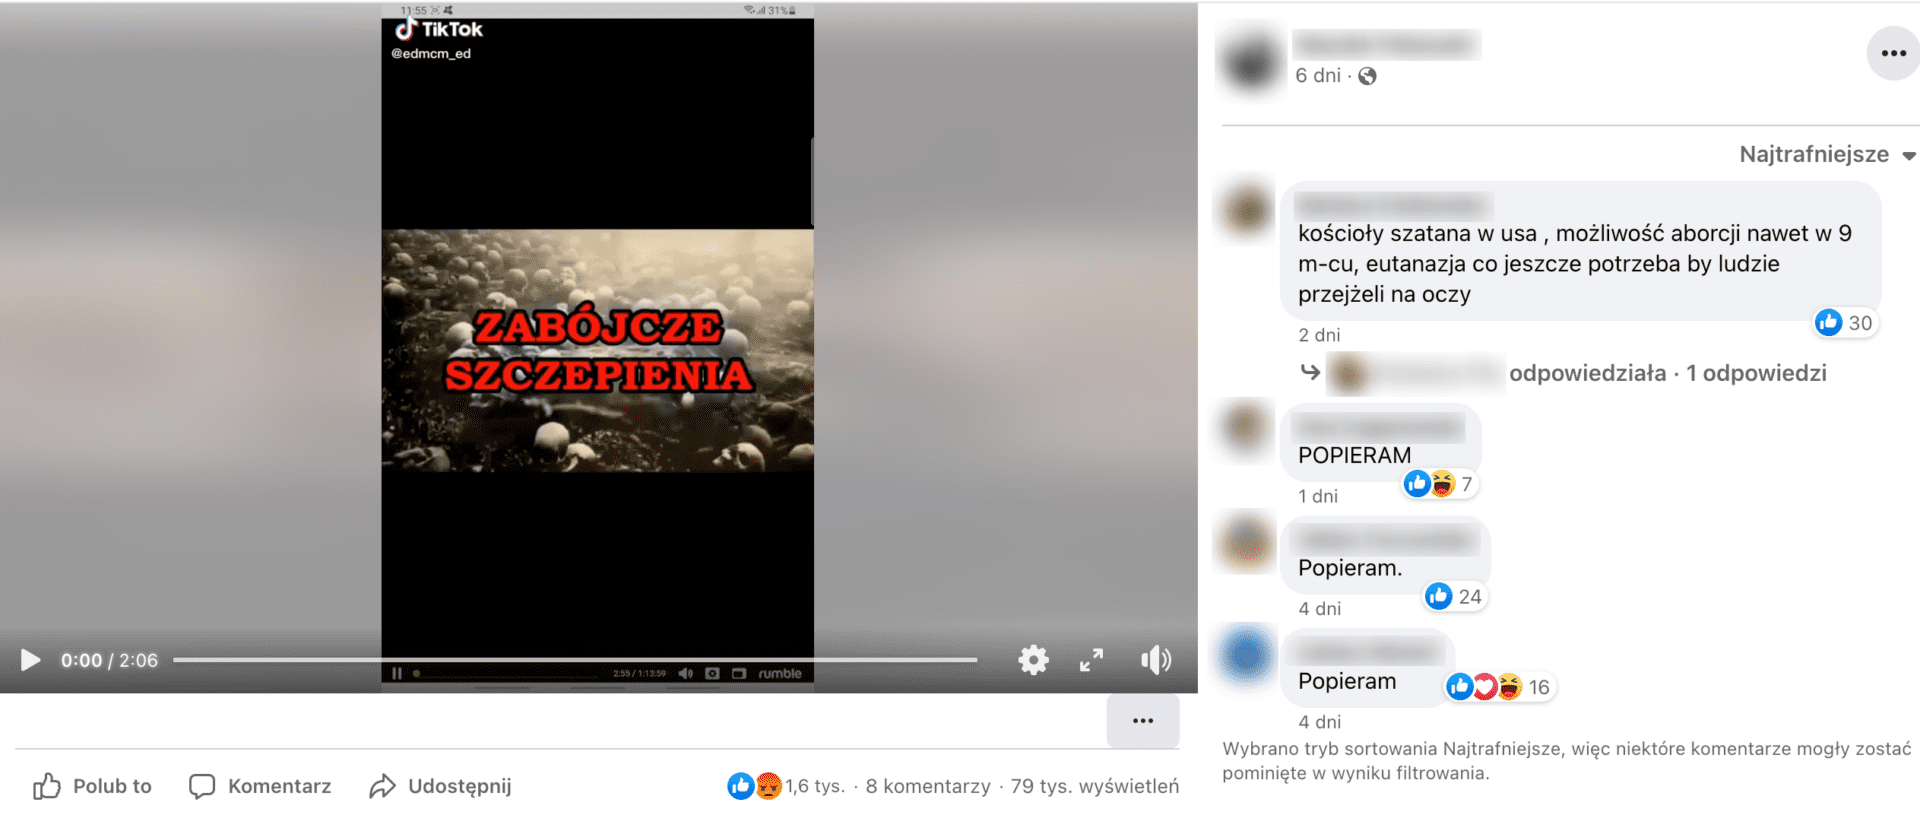 Zrzut ekranu posta na Facebooku. W kadrze udostępnionego Tik Toka znajduje się ziemia pokryta czaszkami. Wielkimi, czerwonymi literami napisano: „ZABÓJCZE SZCZEPIENIA”.